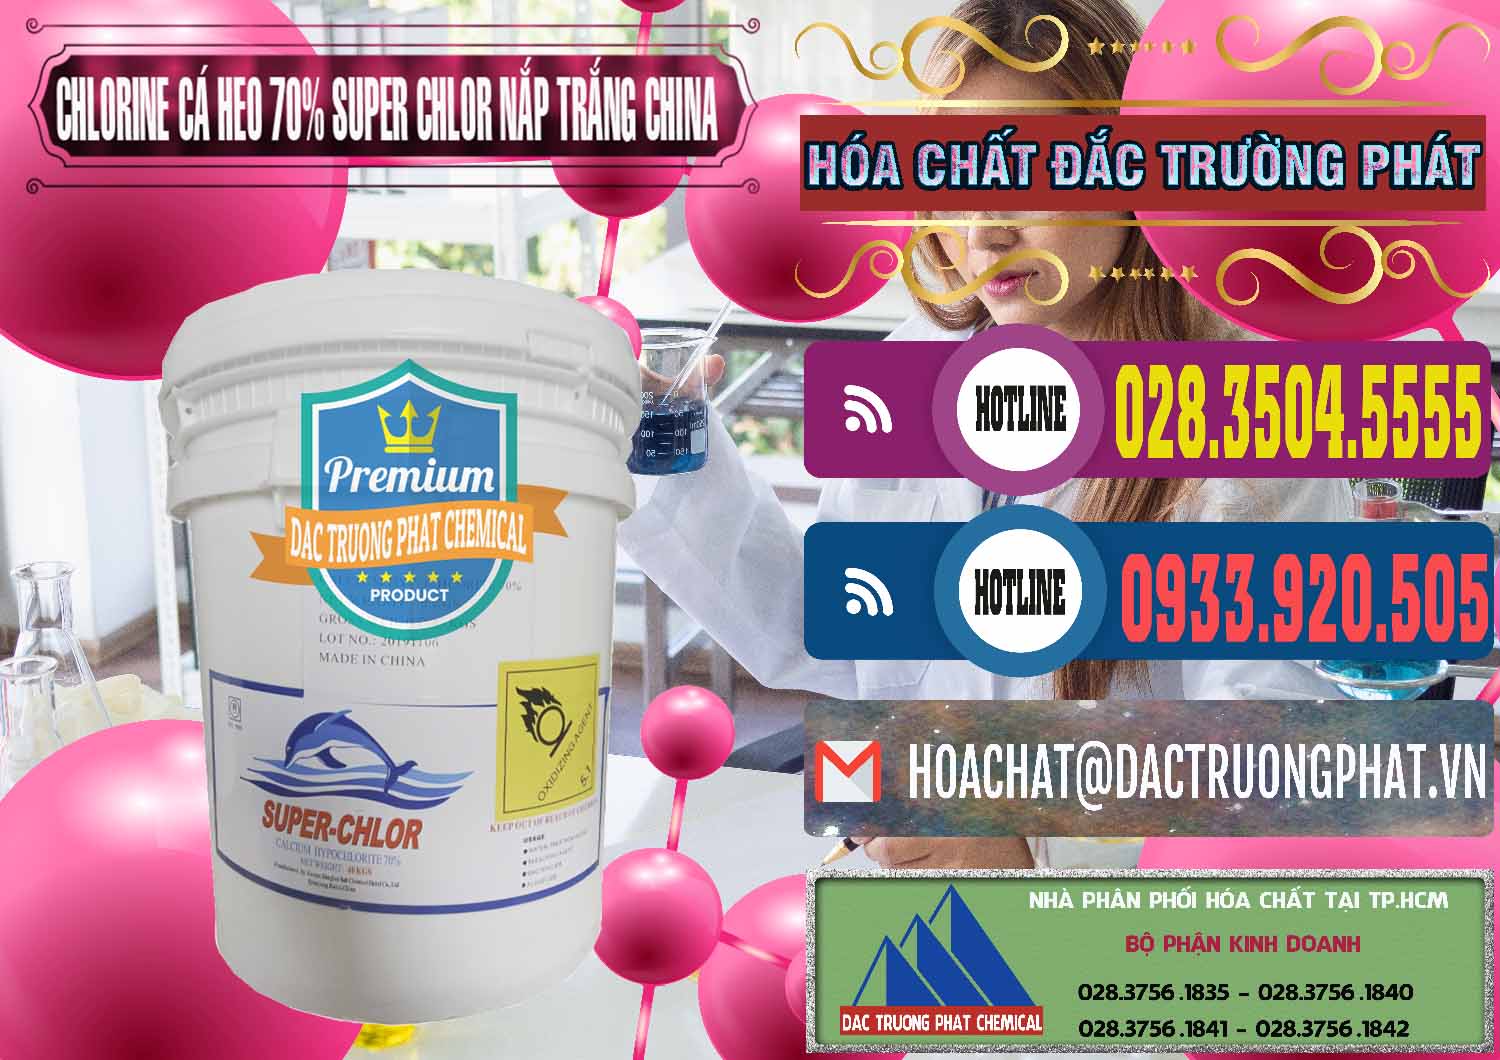 Nơi bán & cung cấp Clorin - Chlorine Cá Heo 70% Super Chlor Nắp Trắng Trung Quốc China - 0240 - Chuyên cung cấp & bán hóa chất tại TP.HCM - muabanhoachat.com.vn